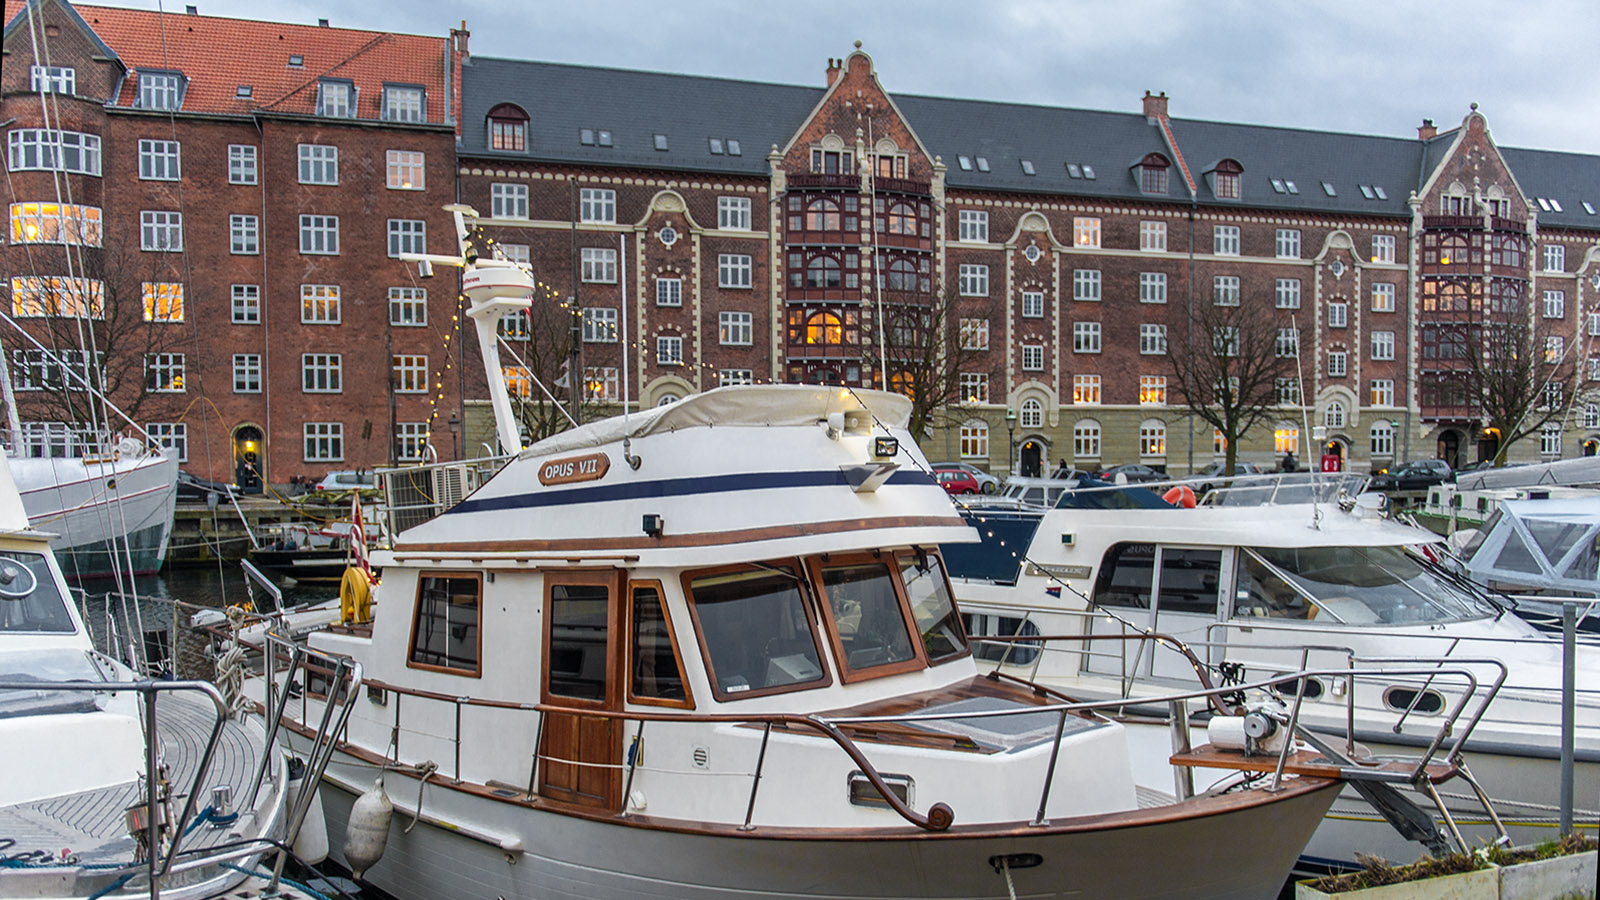 Hyggelig: Die Kais von Christianshavn am frühen Abend. Foto: Hilke Maunder